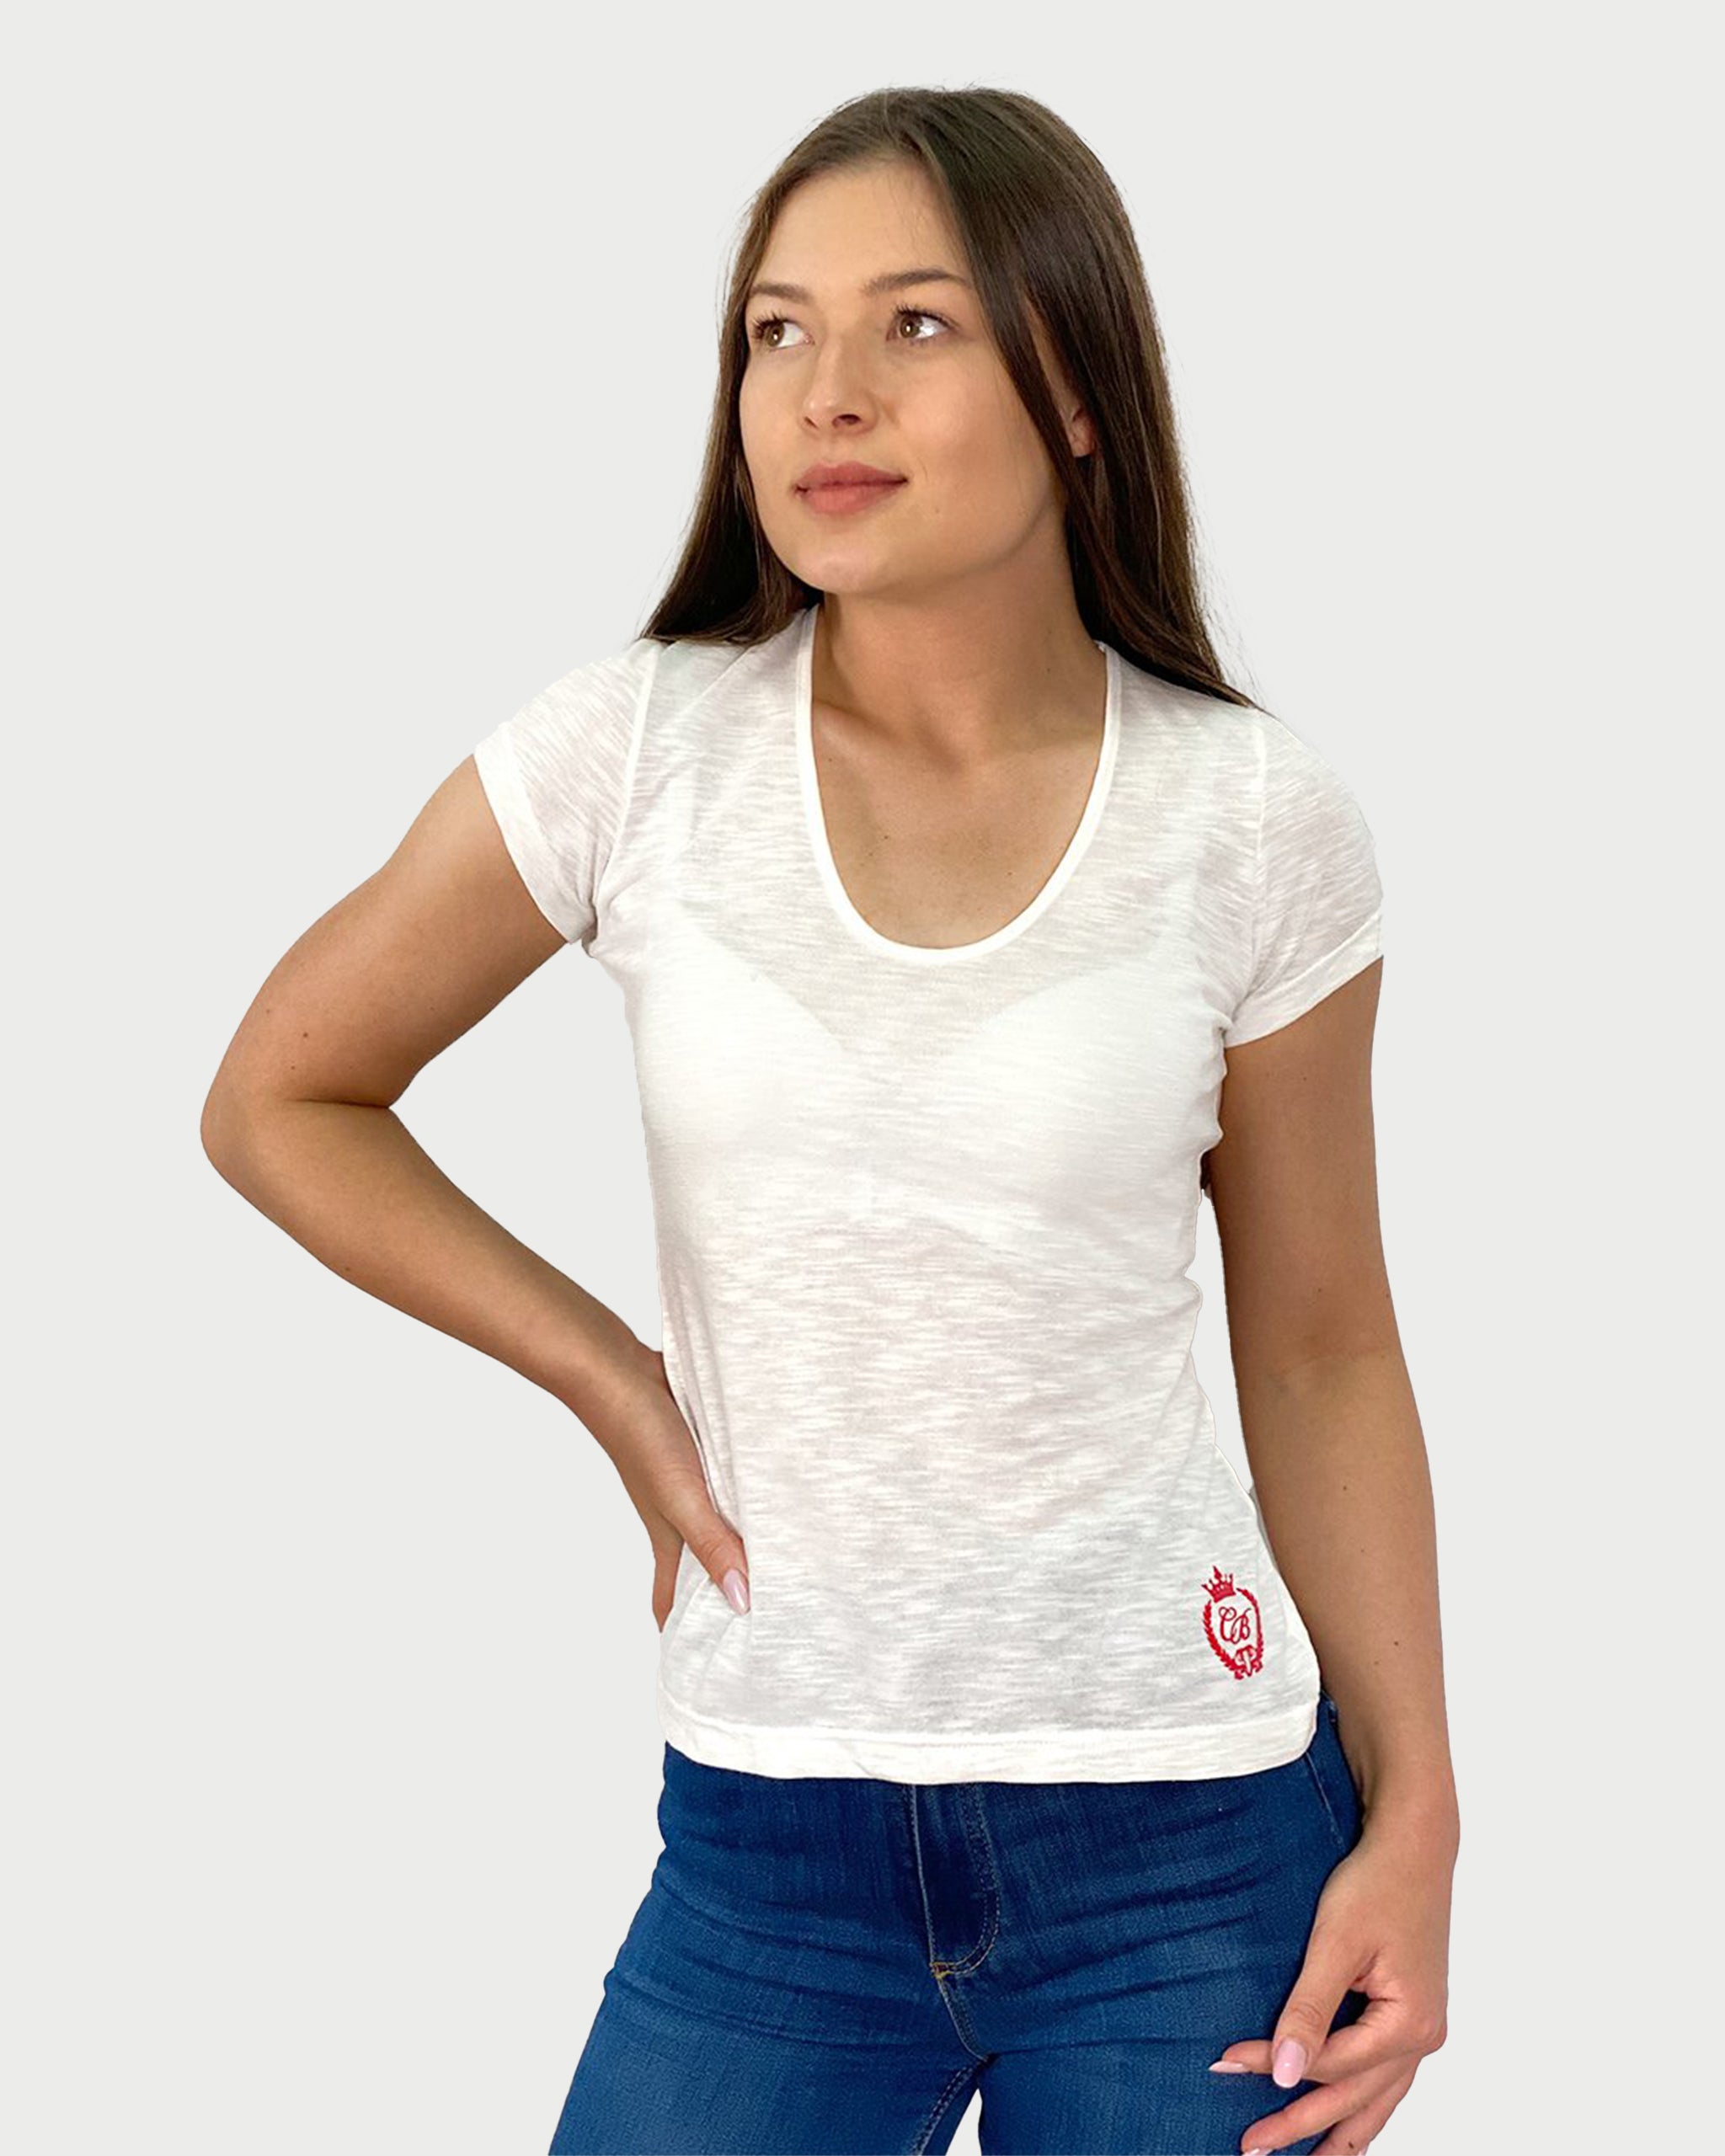 LIGHT SENSATION - tricou minimalist pentru femei